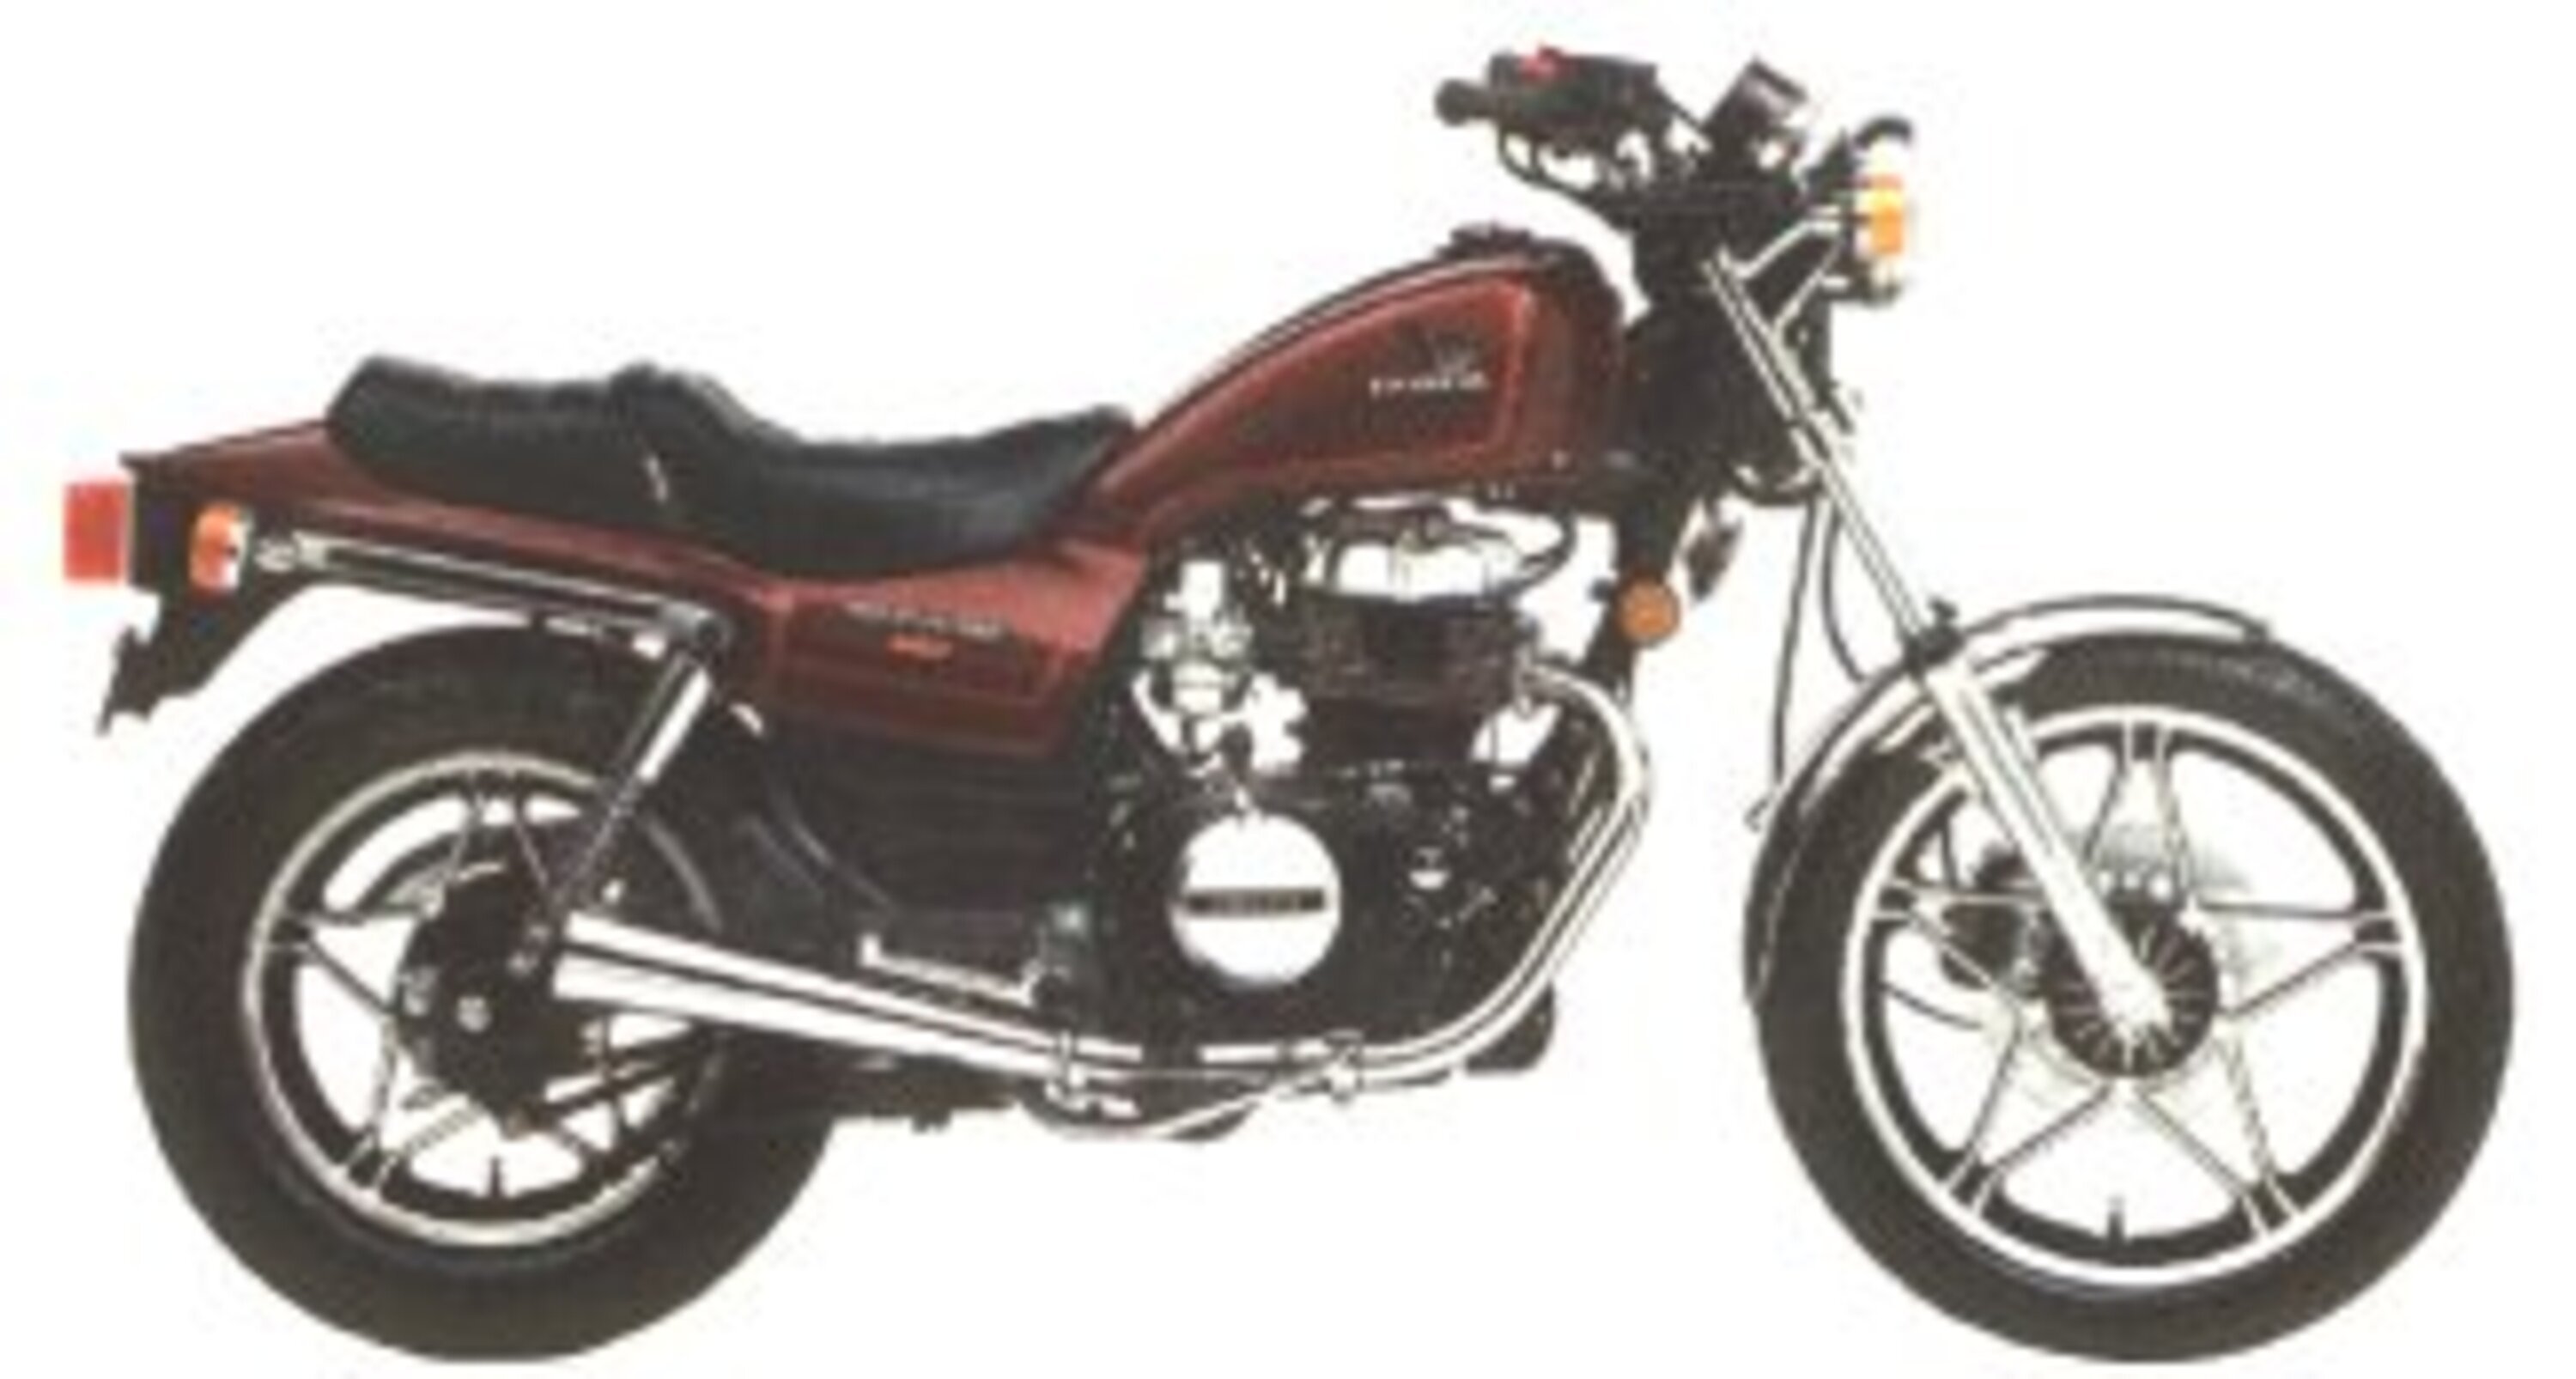 Honda CB 450 CB 450 SC Nighthawk (1986 - 89)